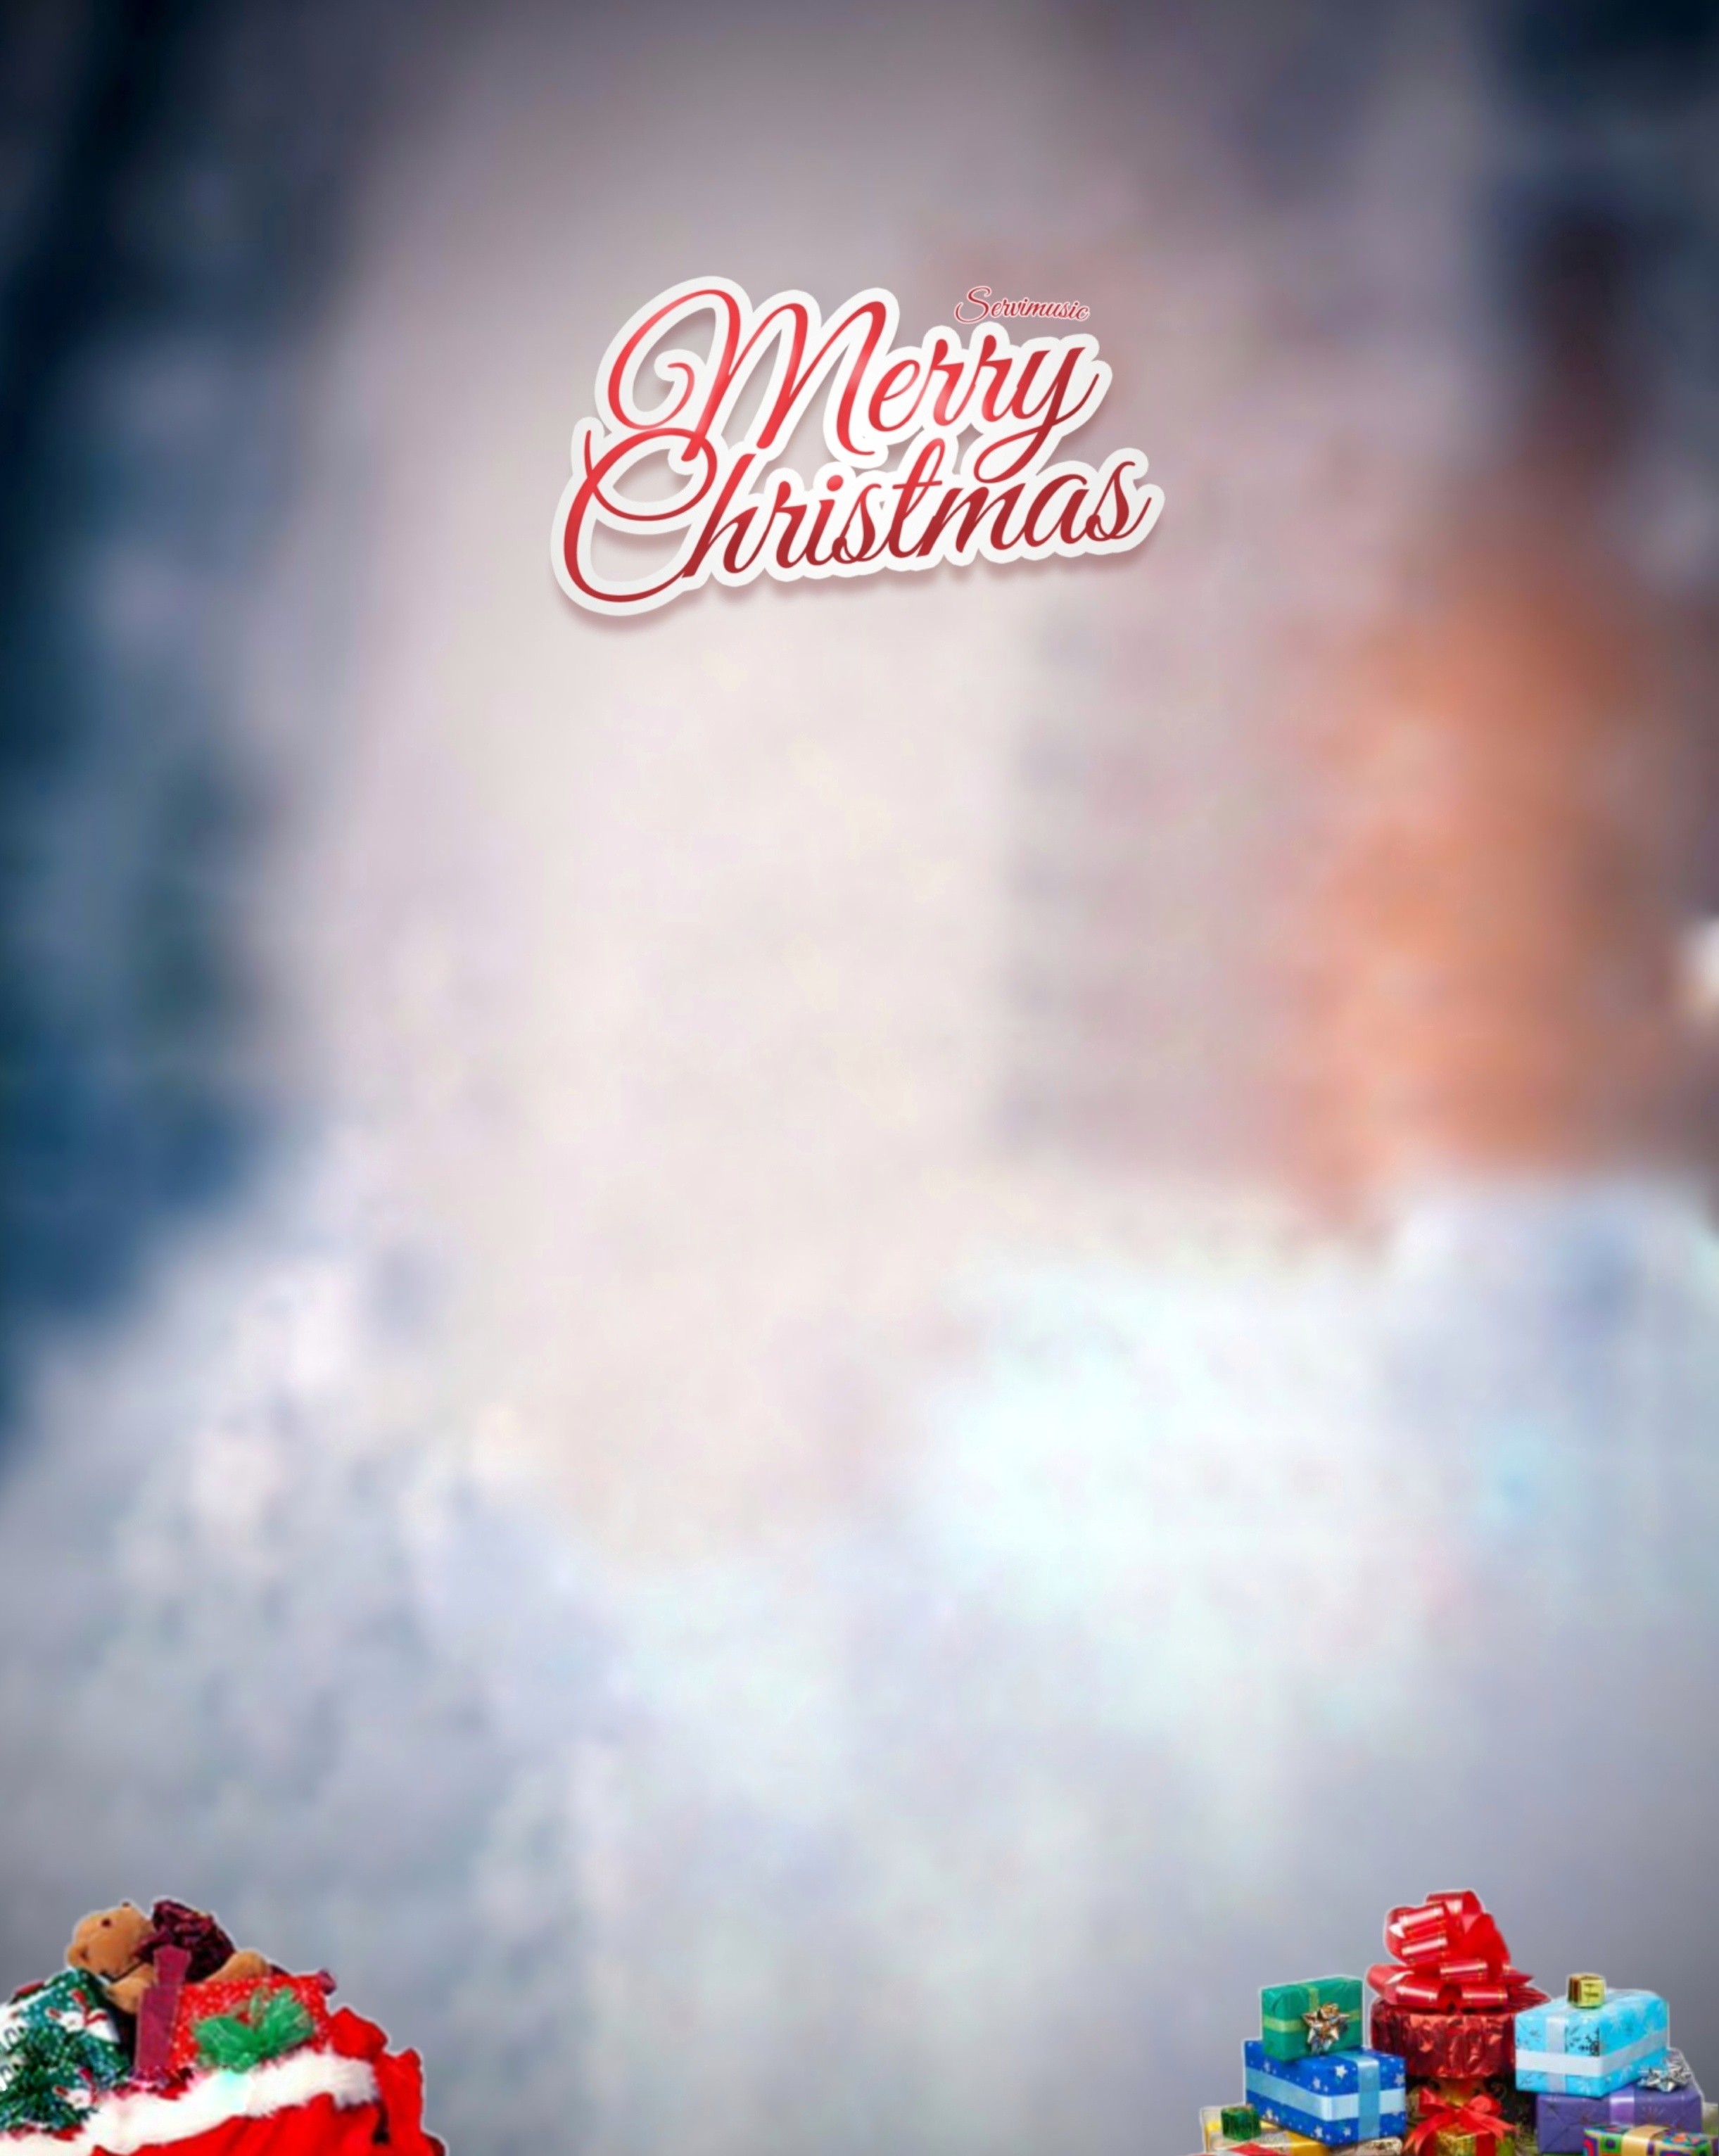 Christmas White Background Image 